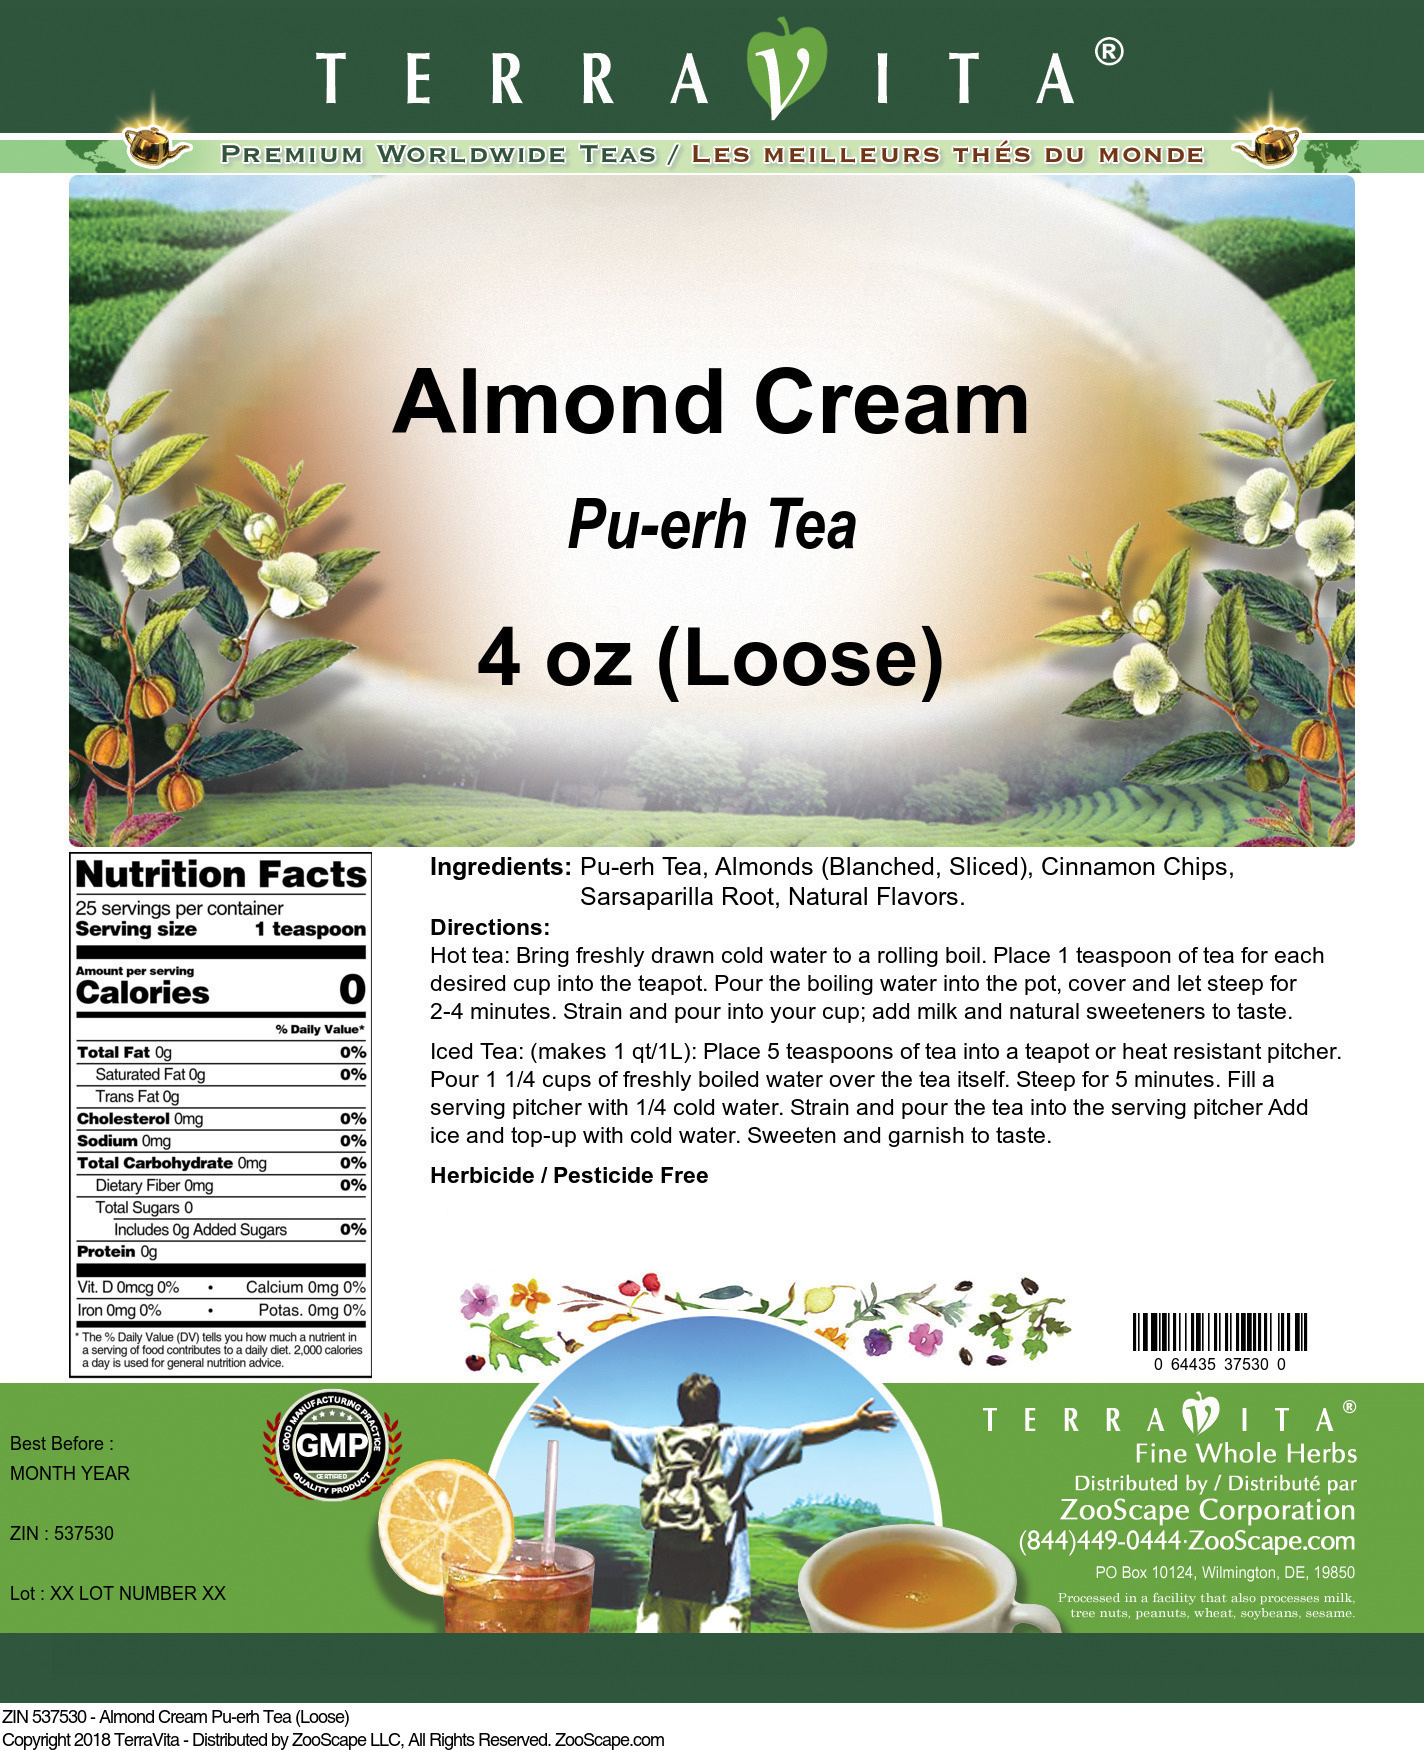 Almond Cream Pu-erh Tea (Loose) - Label